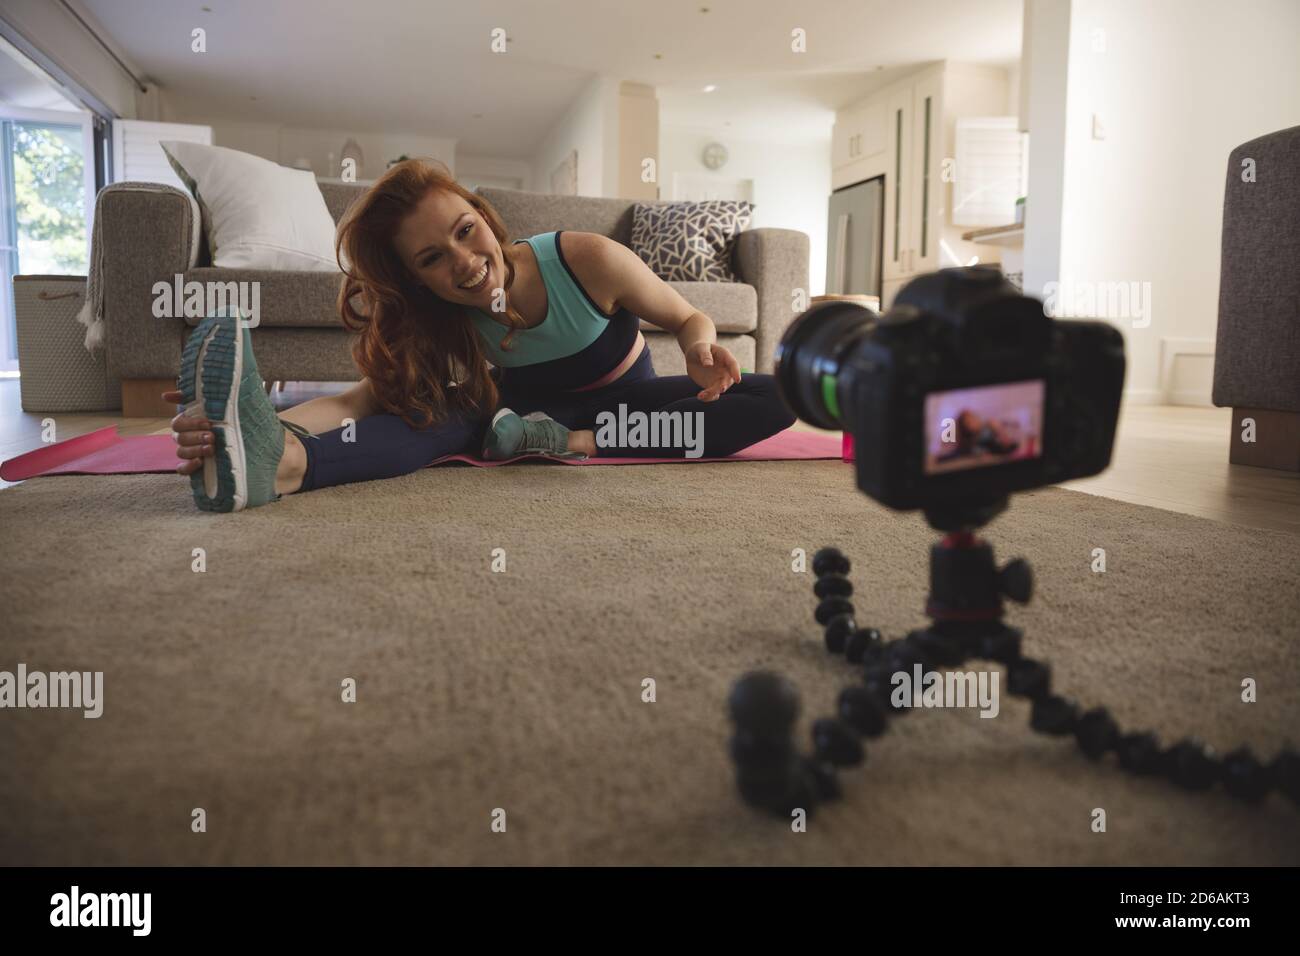 Frau, die Stretching-Übung beim Blick auf Digitalkamera an Zu Hause Stockfoto